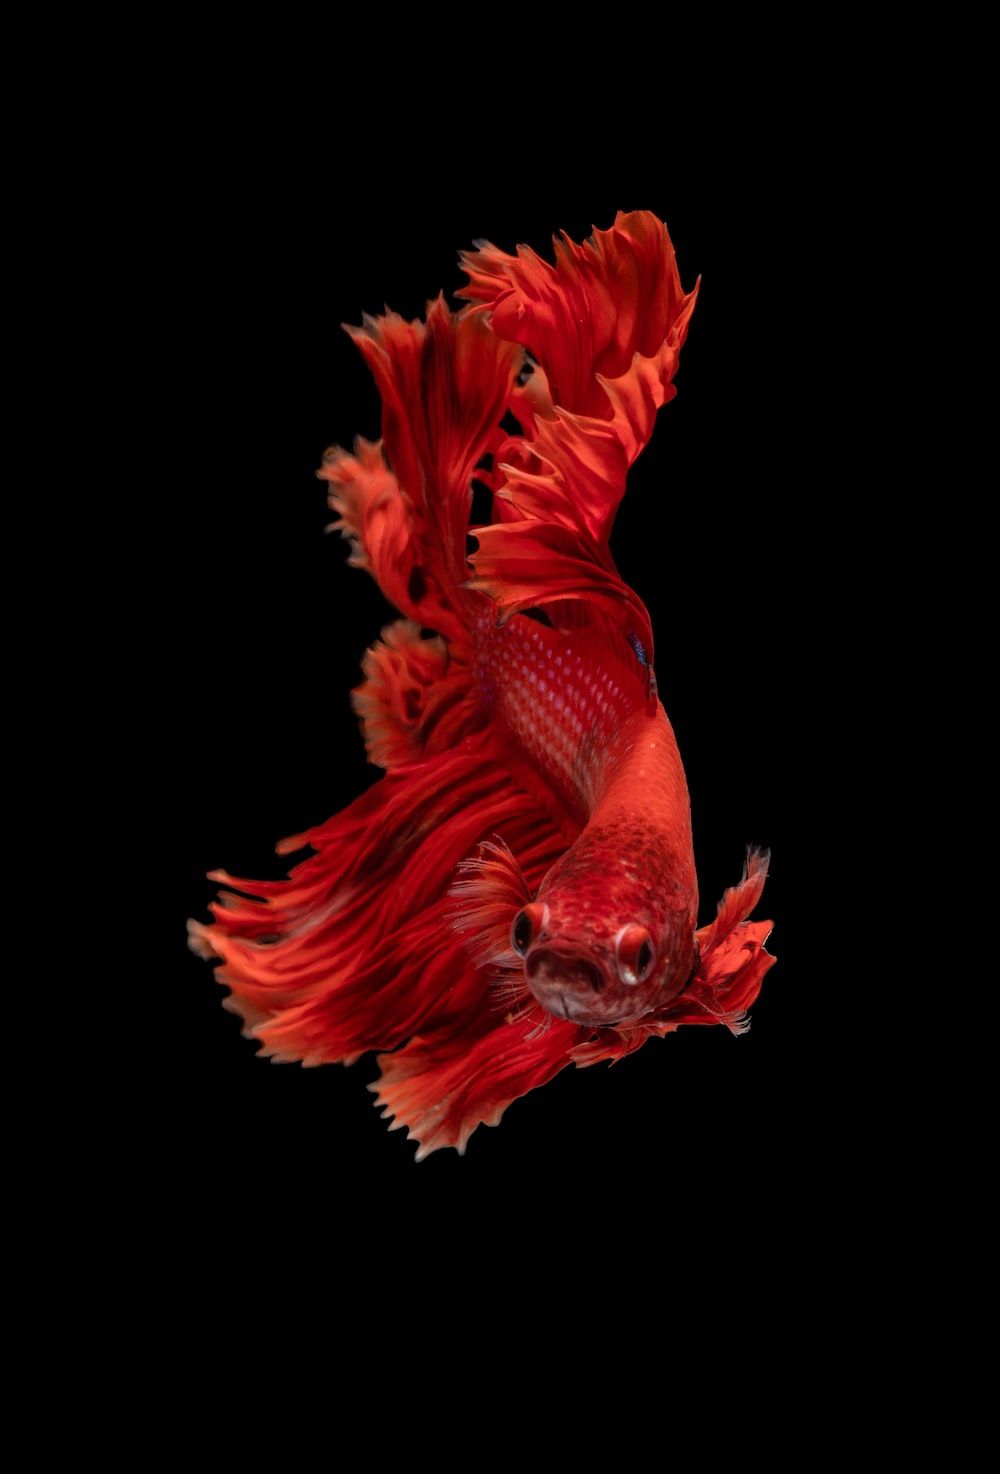  Aquarien Hintergrundbild 1000x1474. Fisch Hintergrundbilder: Kostenloser HD Download [HQ]